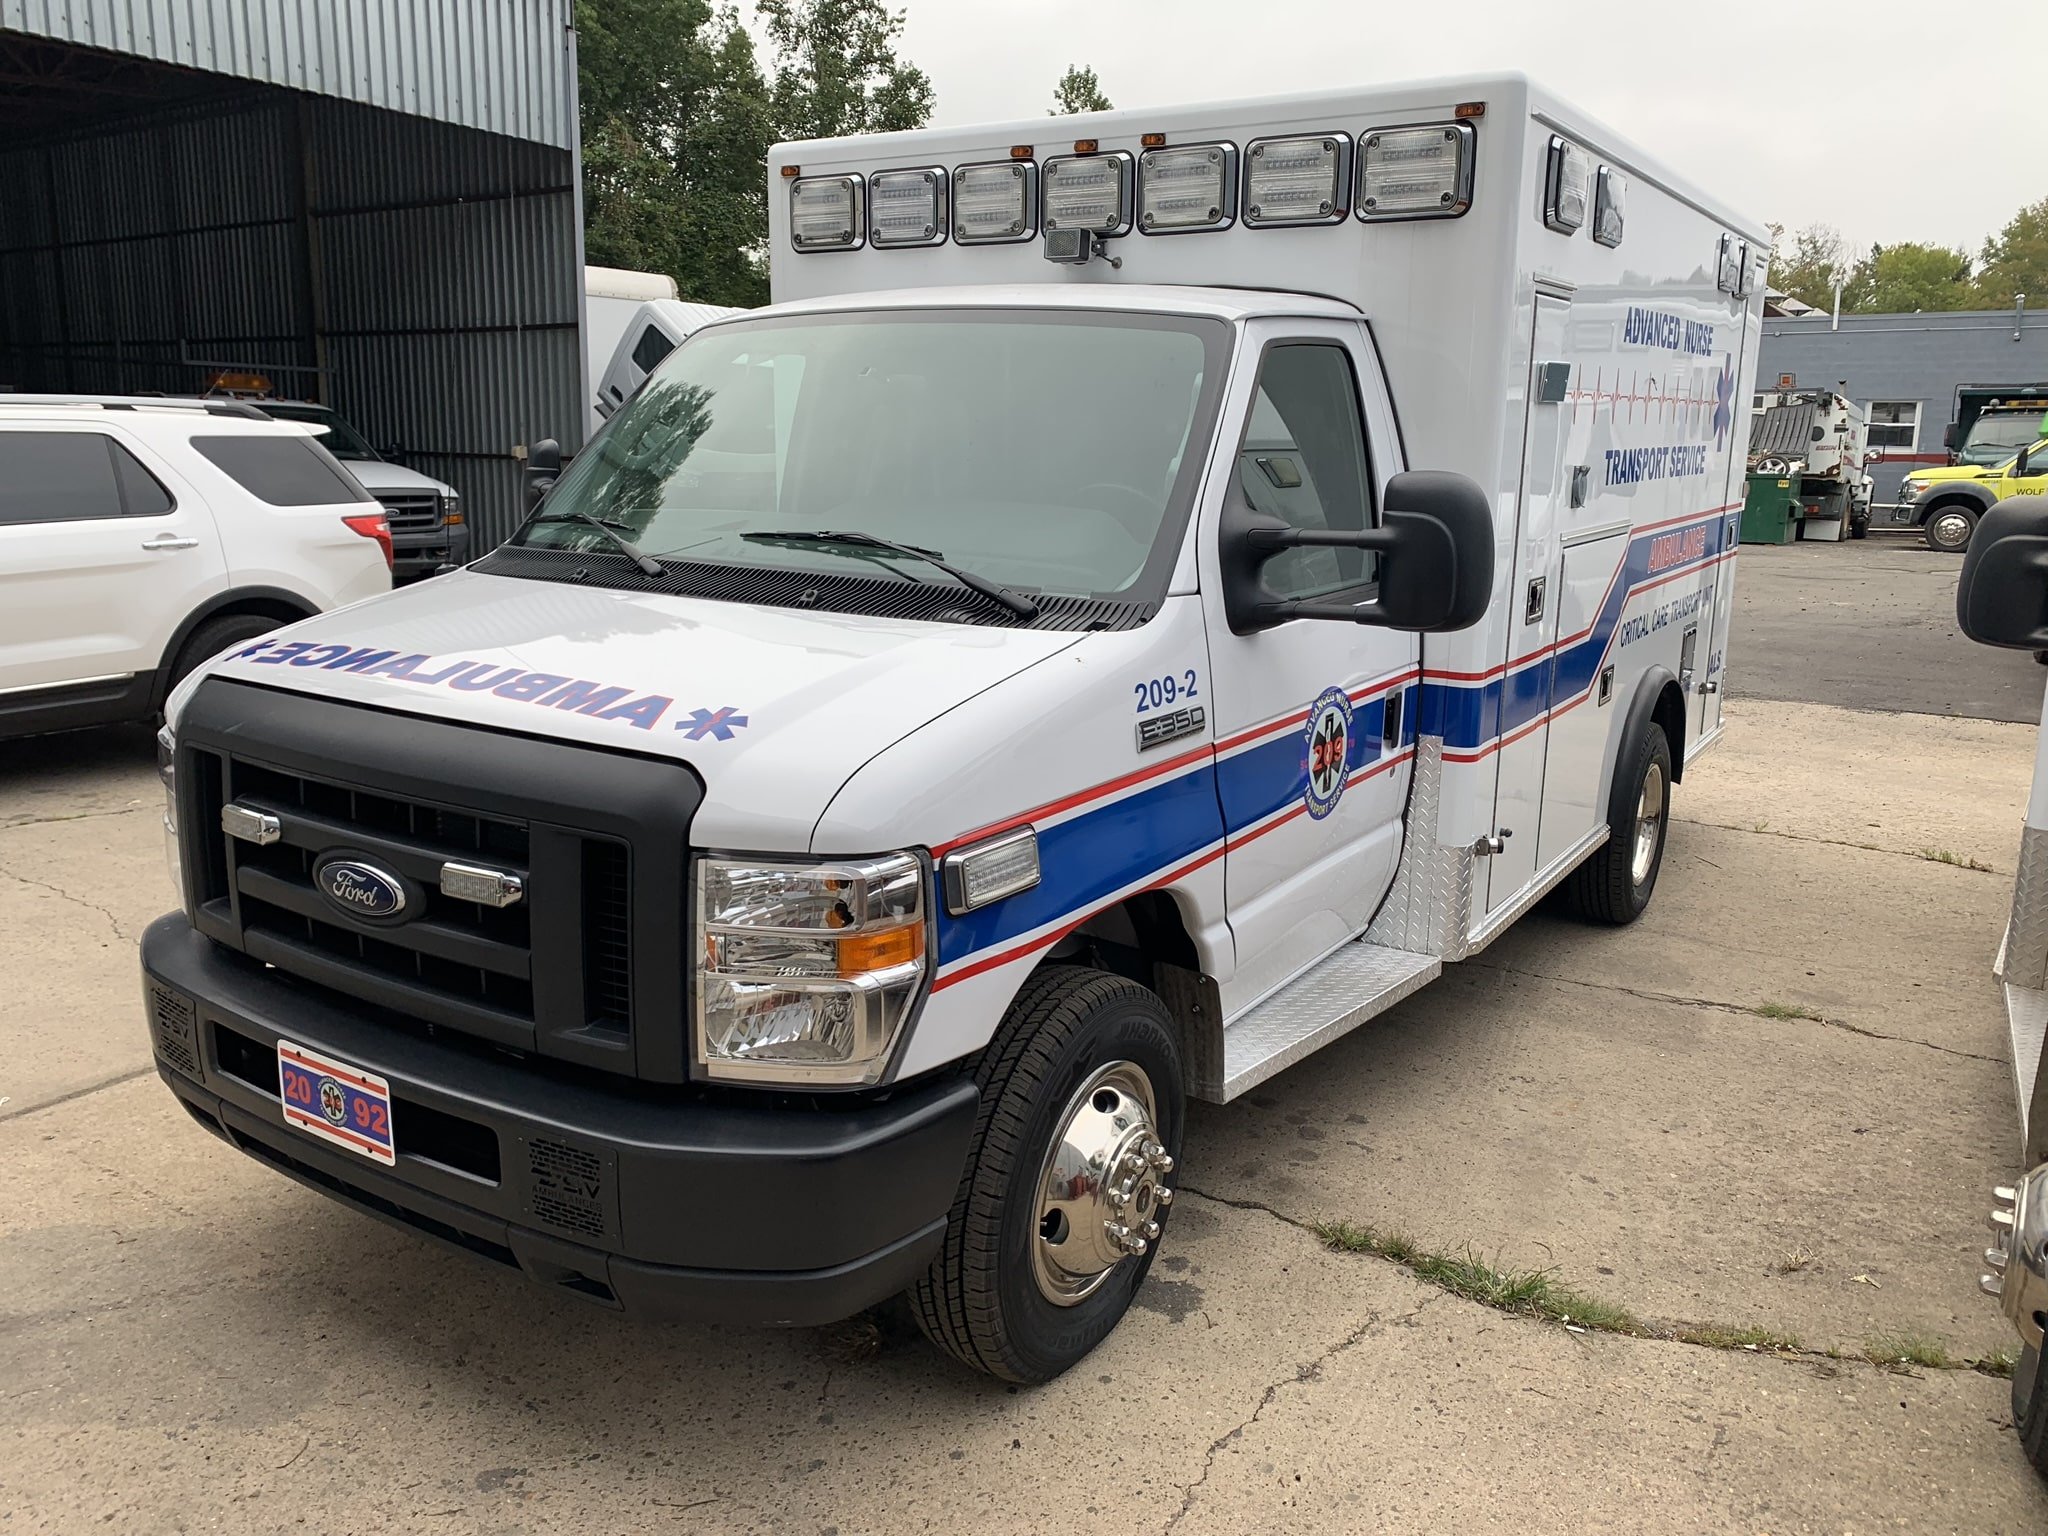 used ambulances NY